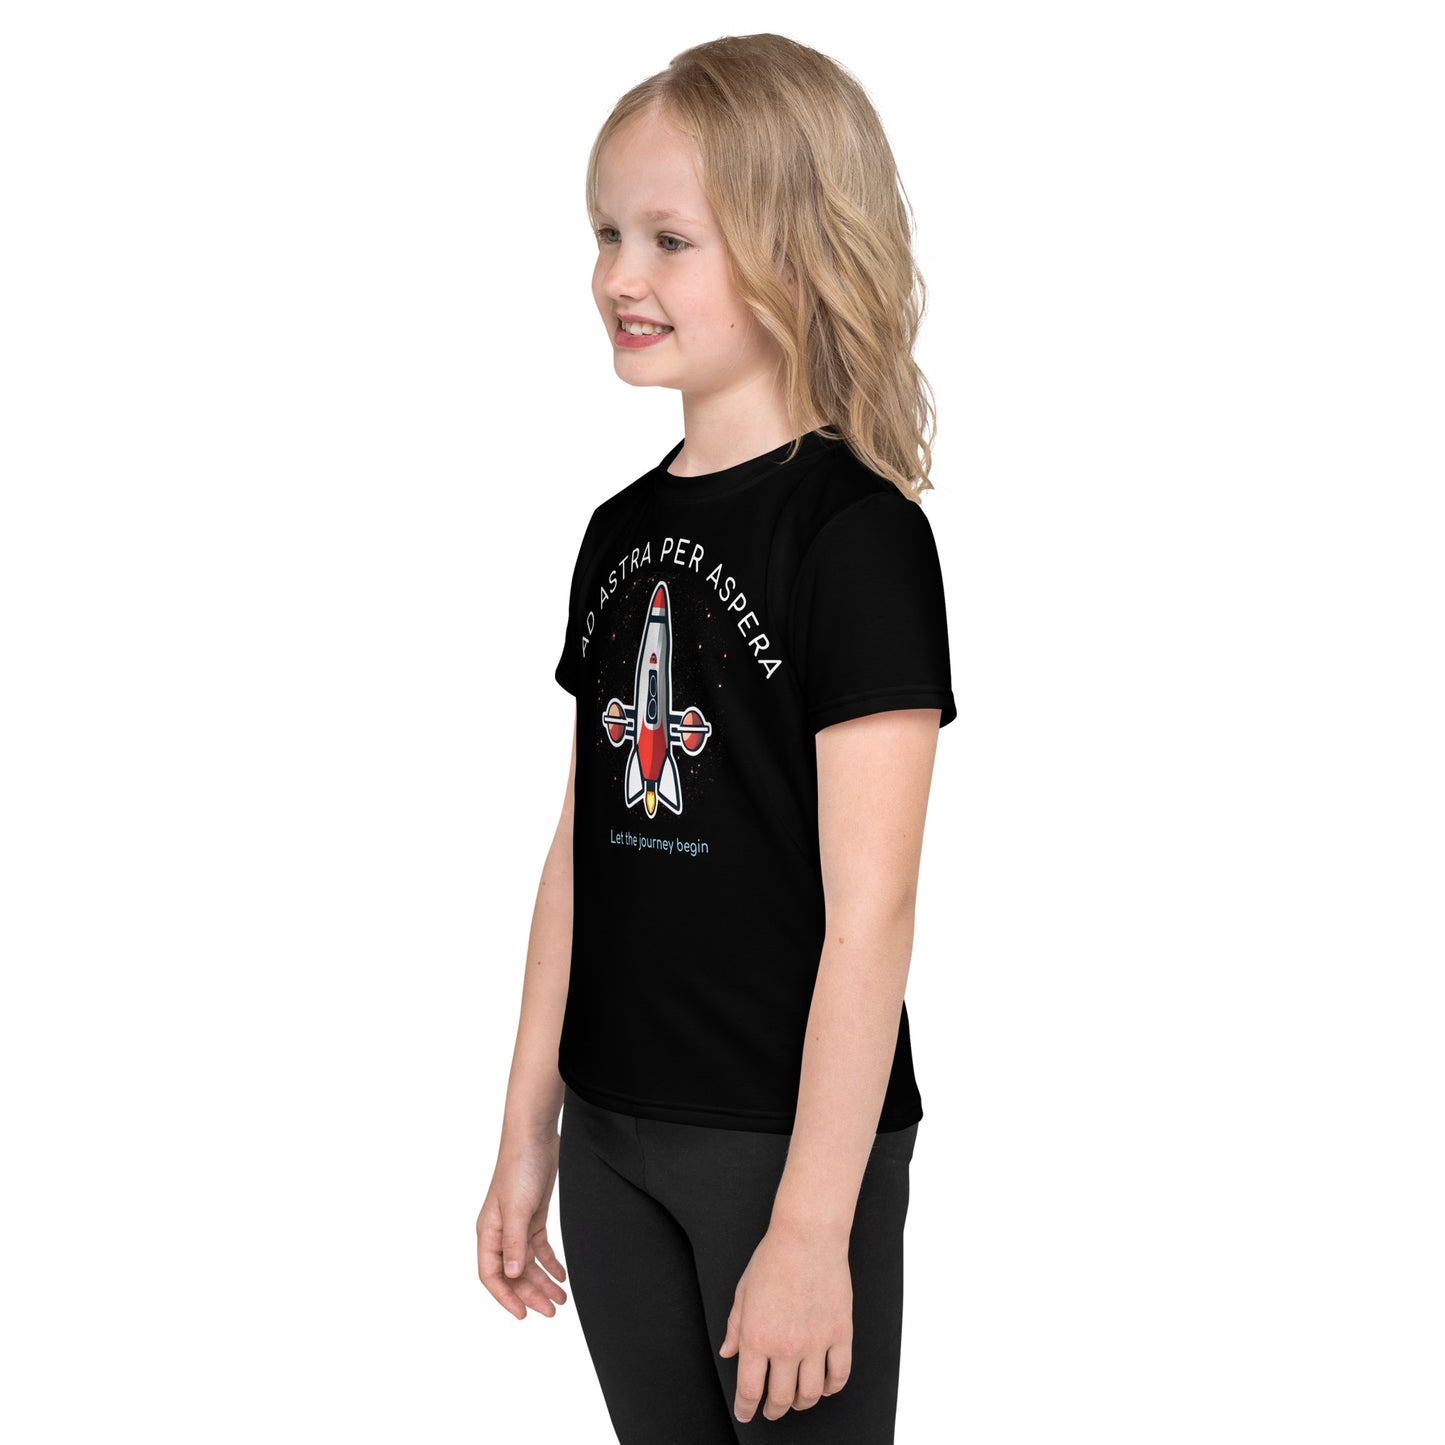 Kids T-shirt Polyester Jersey - USS Titan